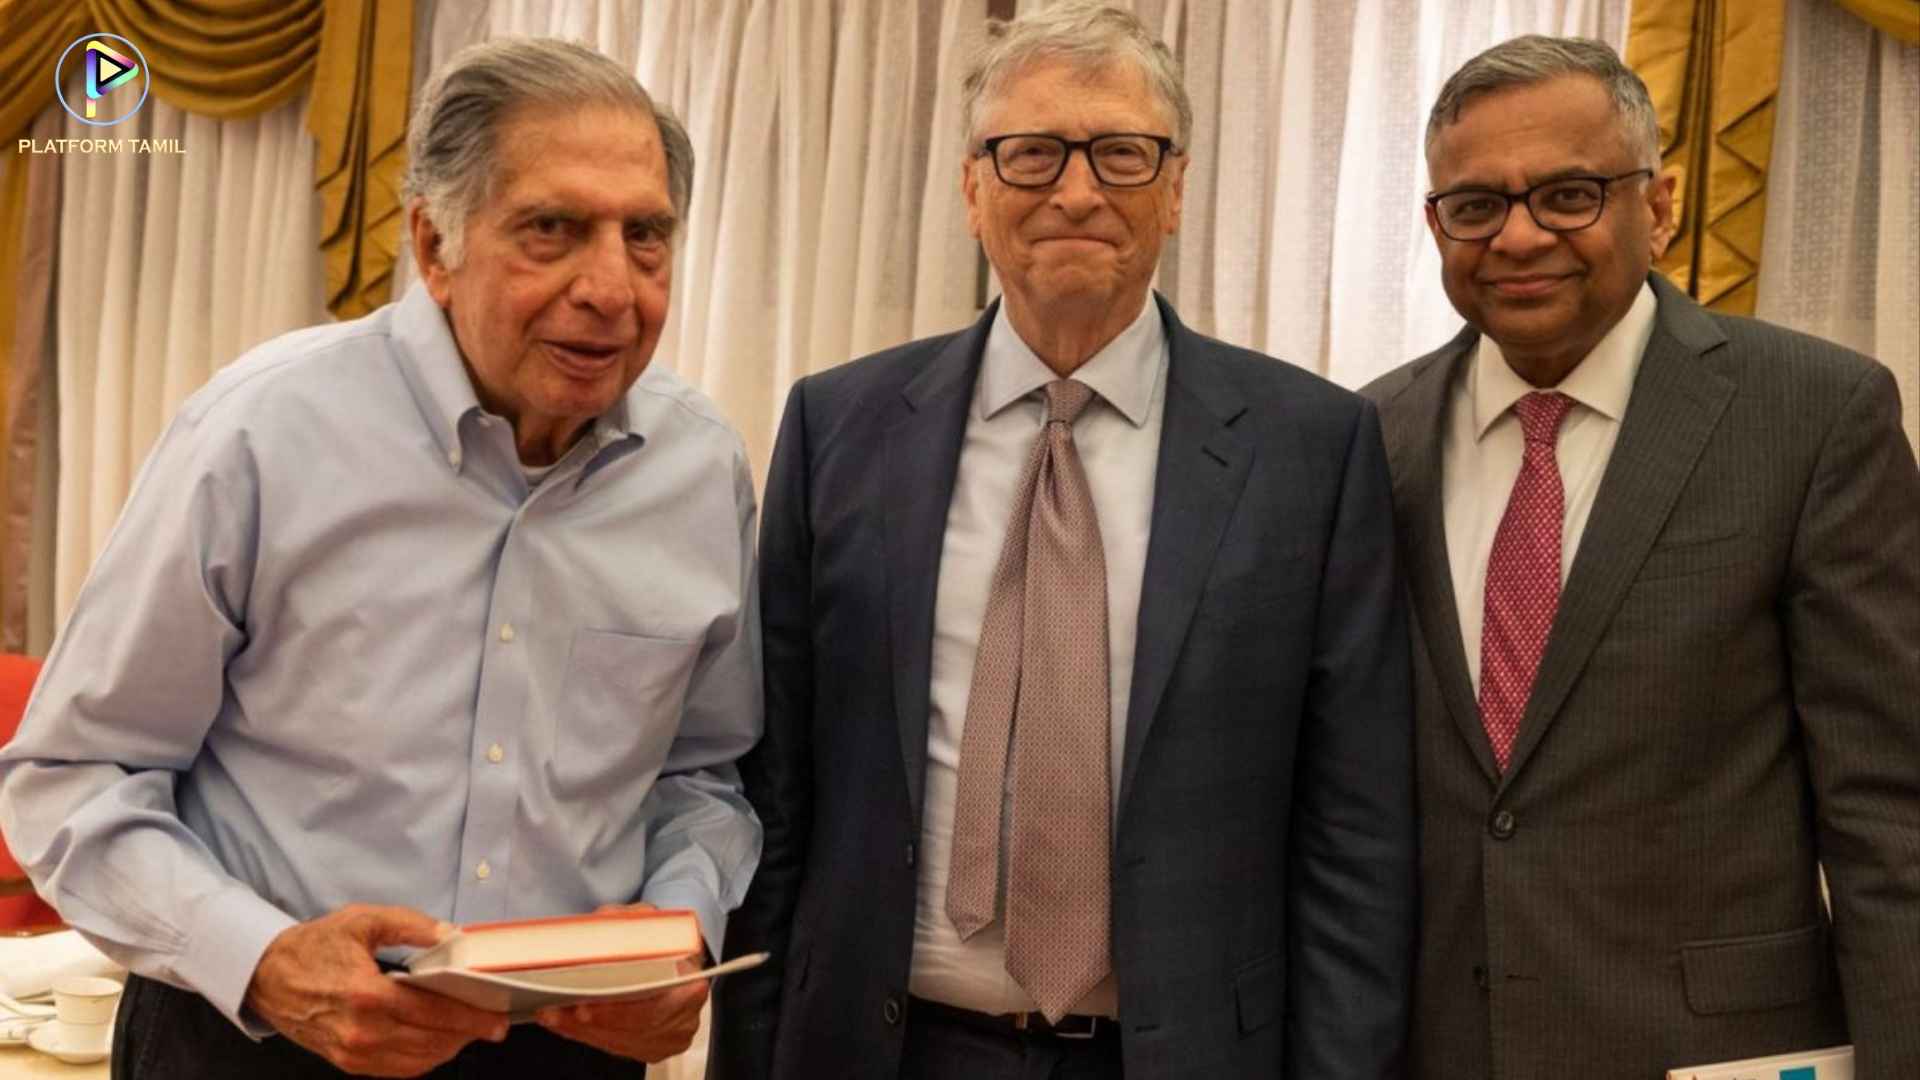 Bill Gates Meets Ratan Tata - Platform Tamil